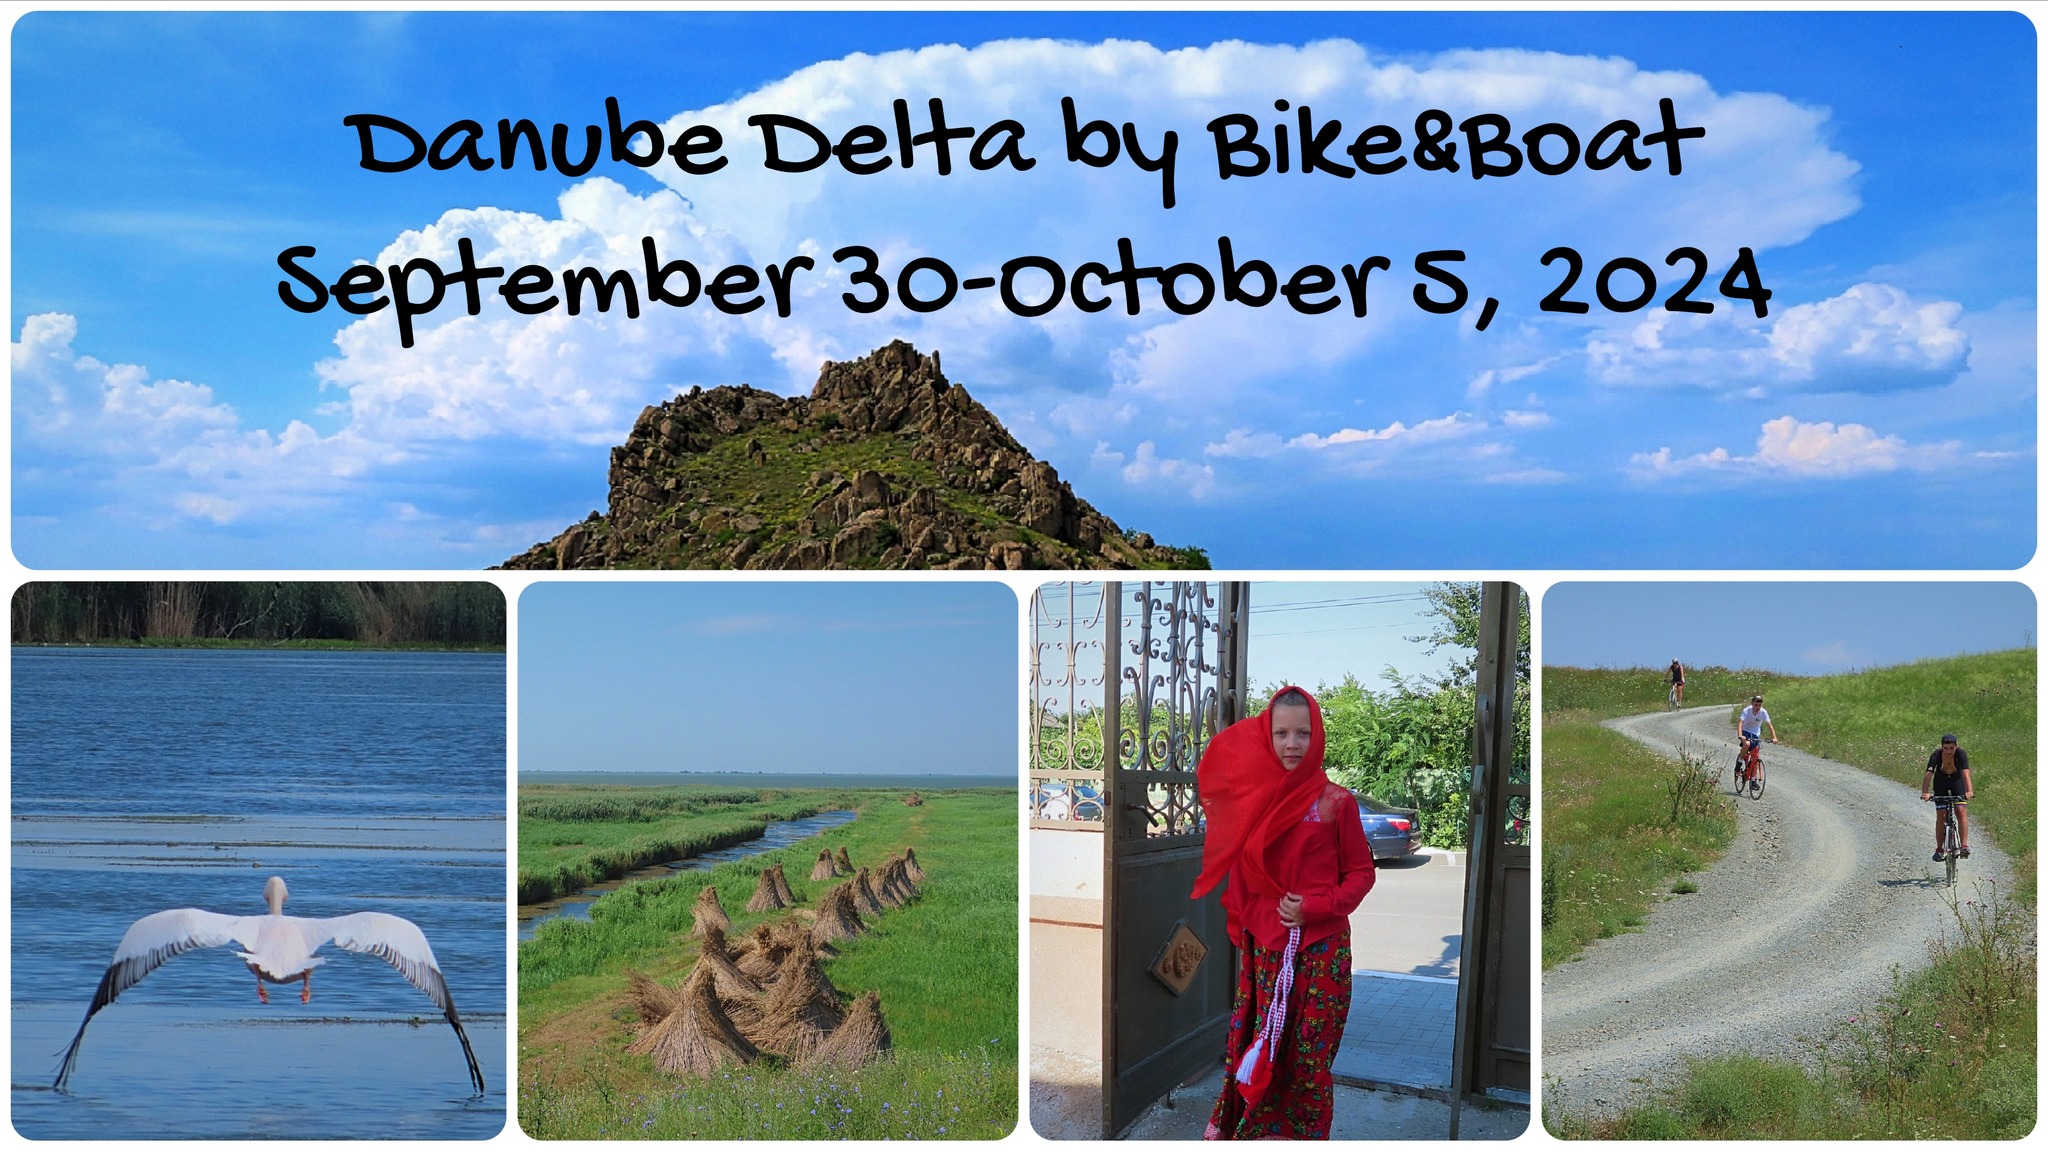 Danube Delta by Bike & Boat (Tulcea)